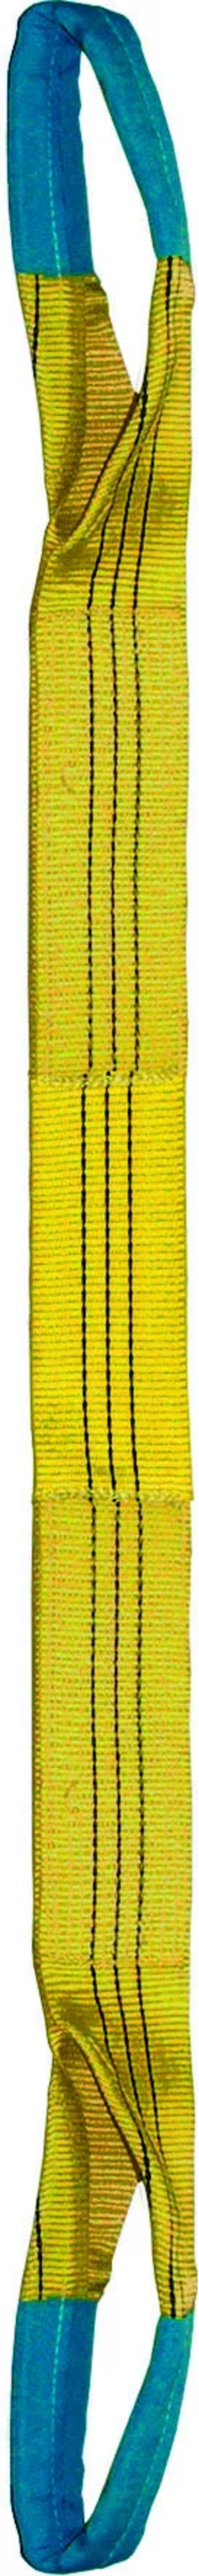 Élingue sangle double 90 mm cmu 3 t jaune boucles repliées lg. 1,50 m LEVAC - 4822C15